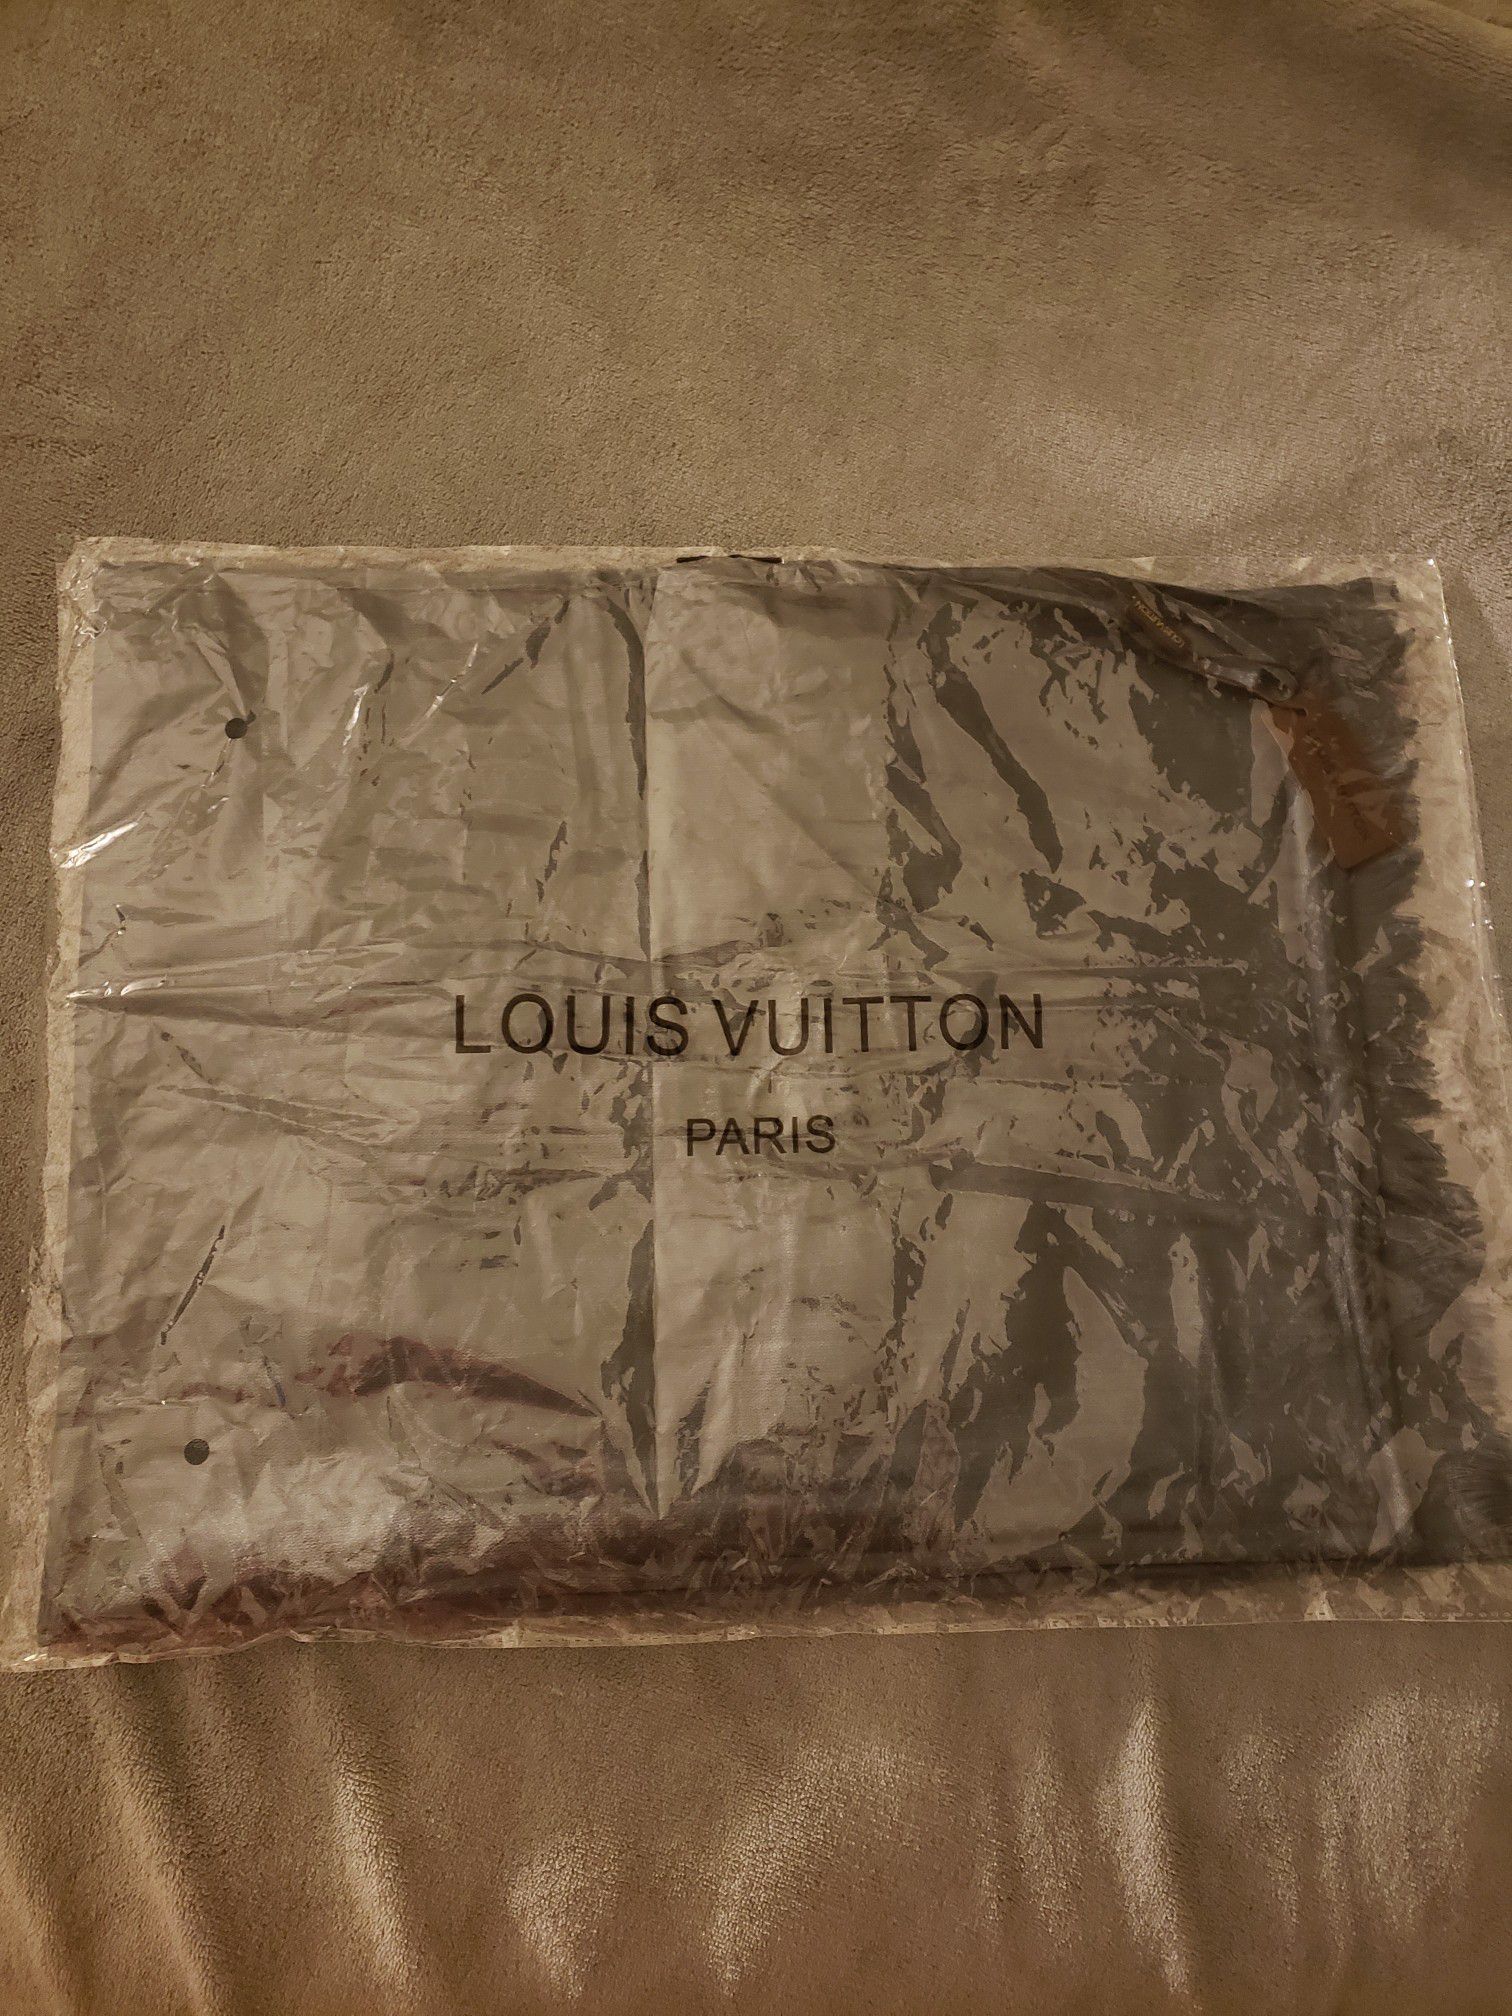 Louis Vuitton silk shawl/scarf